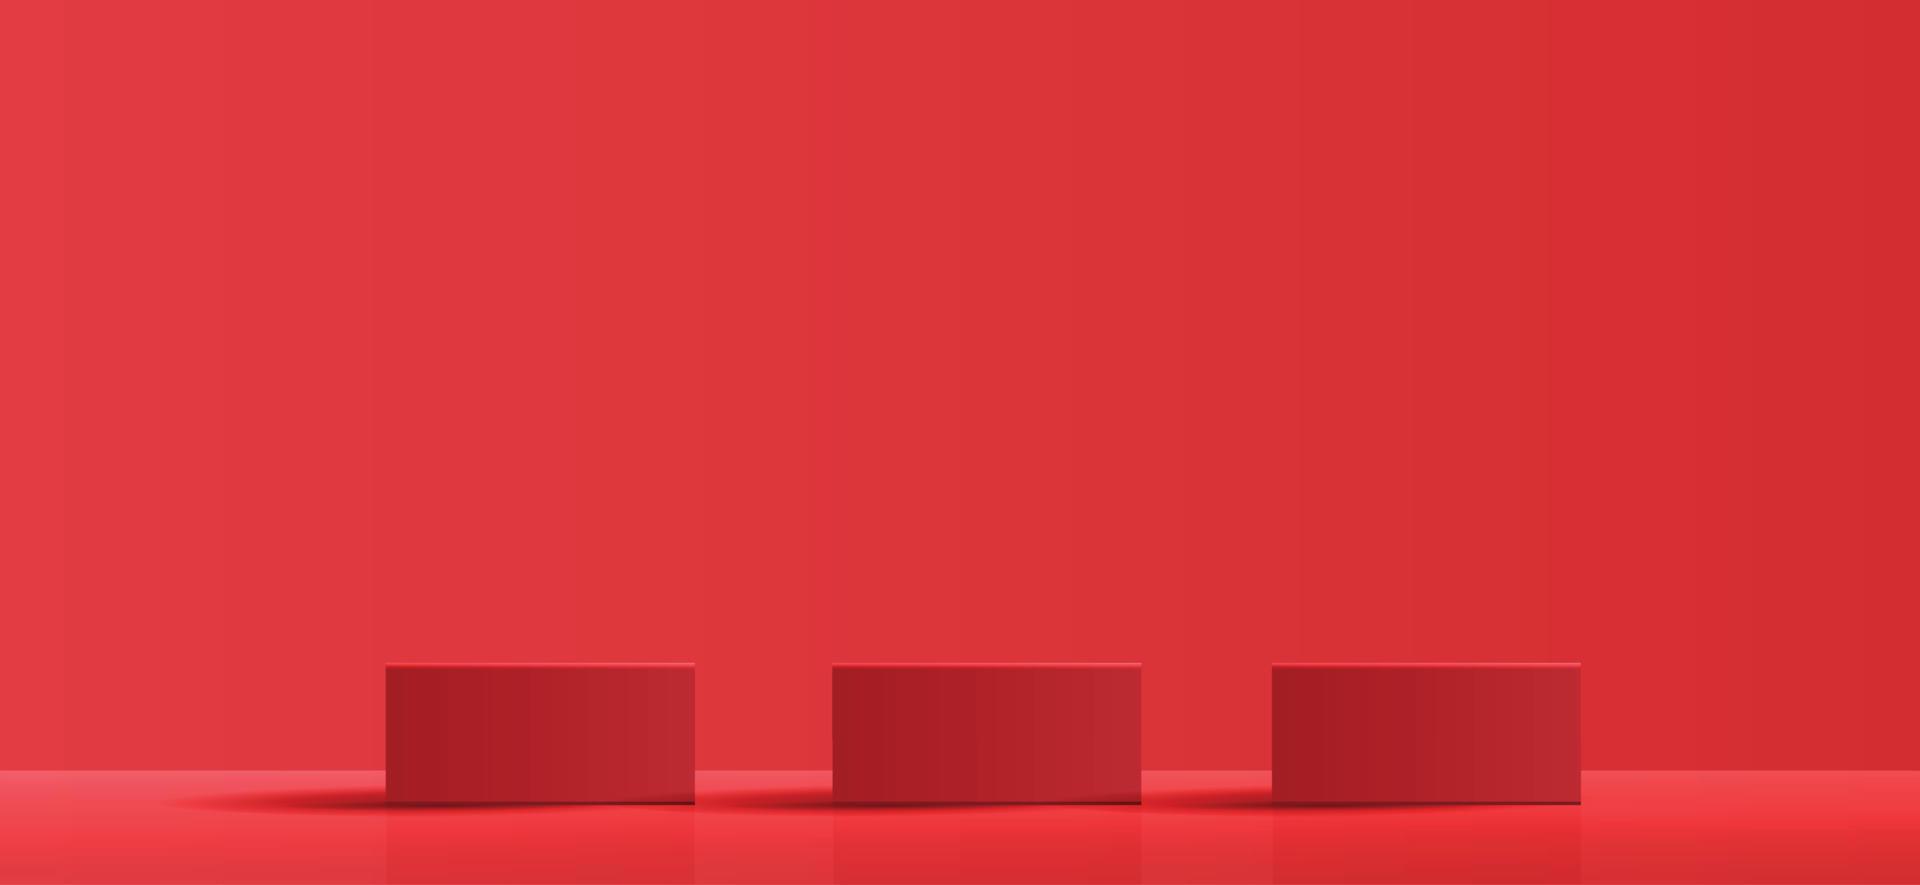 sfondo cosmetico per la presentazione di prodotti, marchi e imballaggi. forma geometrica modanatura quadrata sul palco del podio con sfondo rosso scintillante effetto luce. disegno vettoriale. vettore